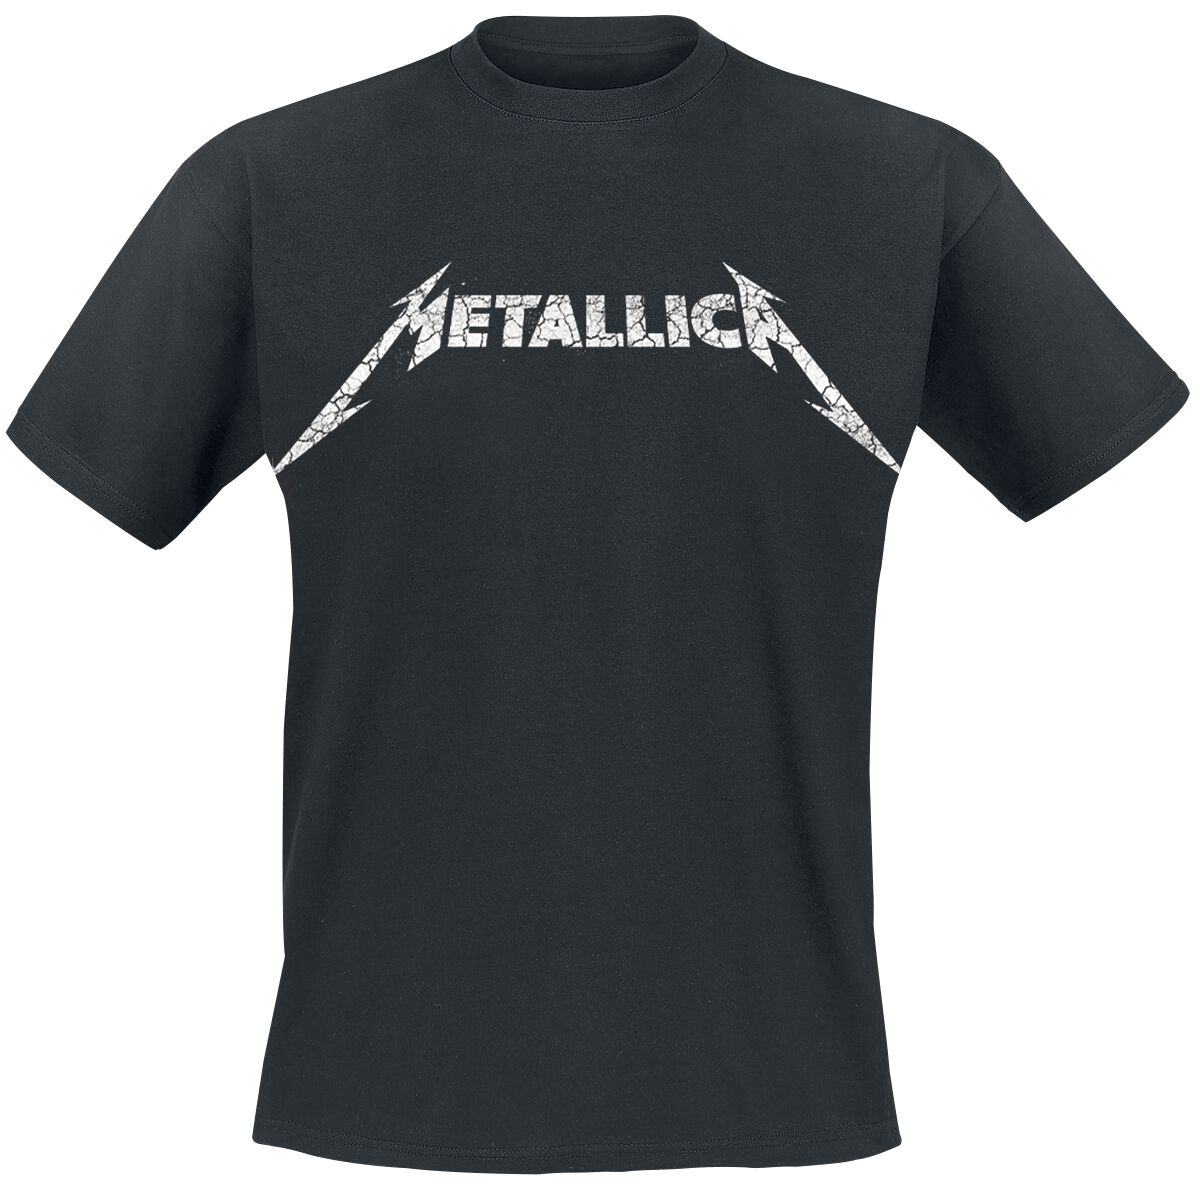 Metallica T-Shirt - Kill Ride Master - S bis 5XL - für Männer - Größe L - schwarz  - Lizenziertes Merchandise!